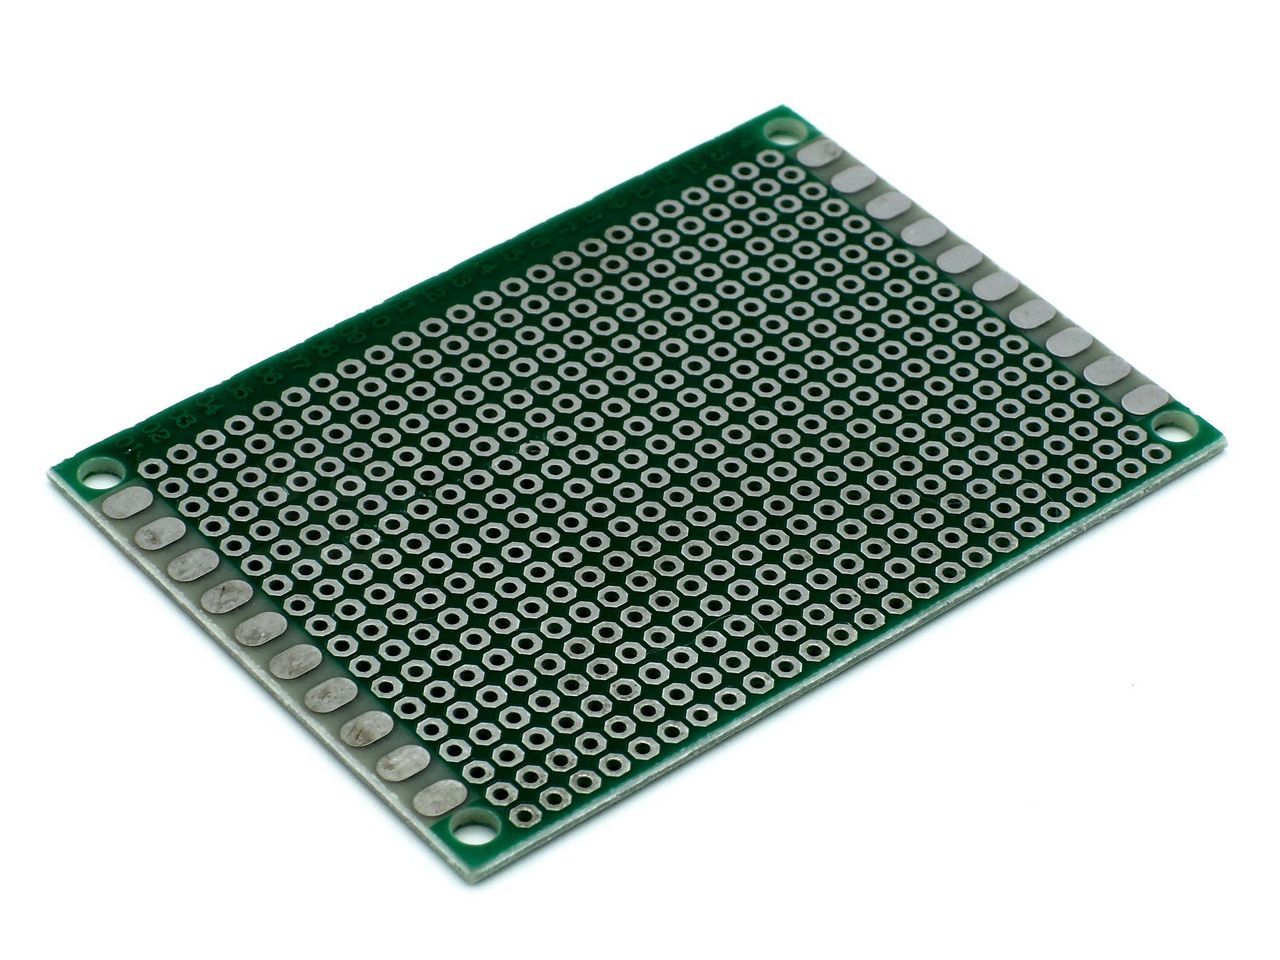 Набор комплектующих и компонентов для Arduino (макетная плата, провода, резисторы, светодиоды)